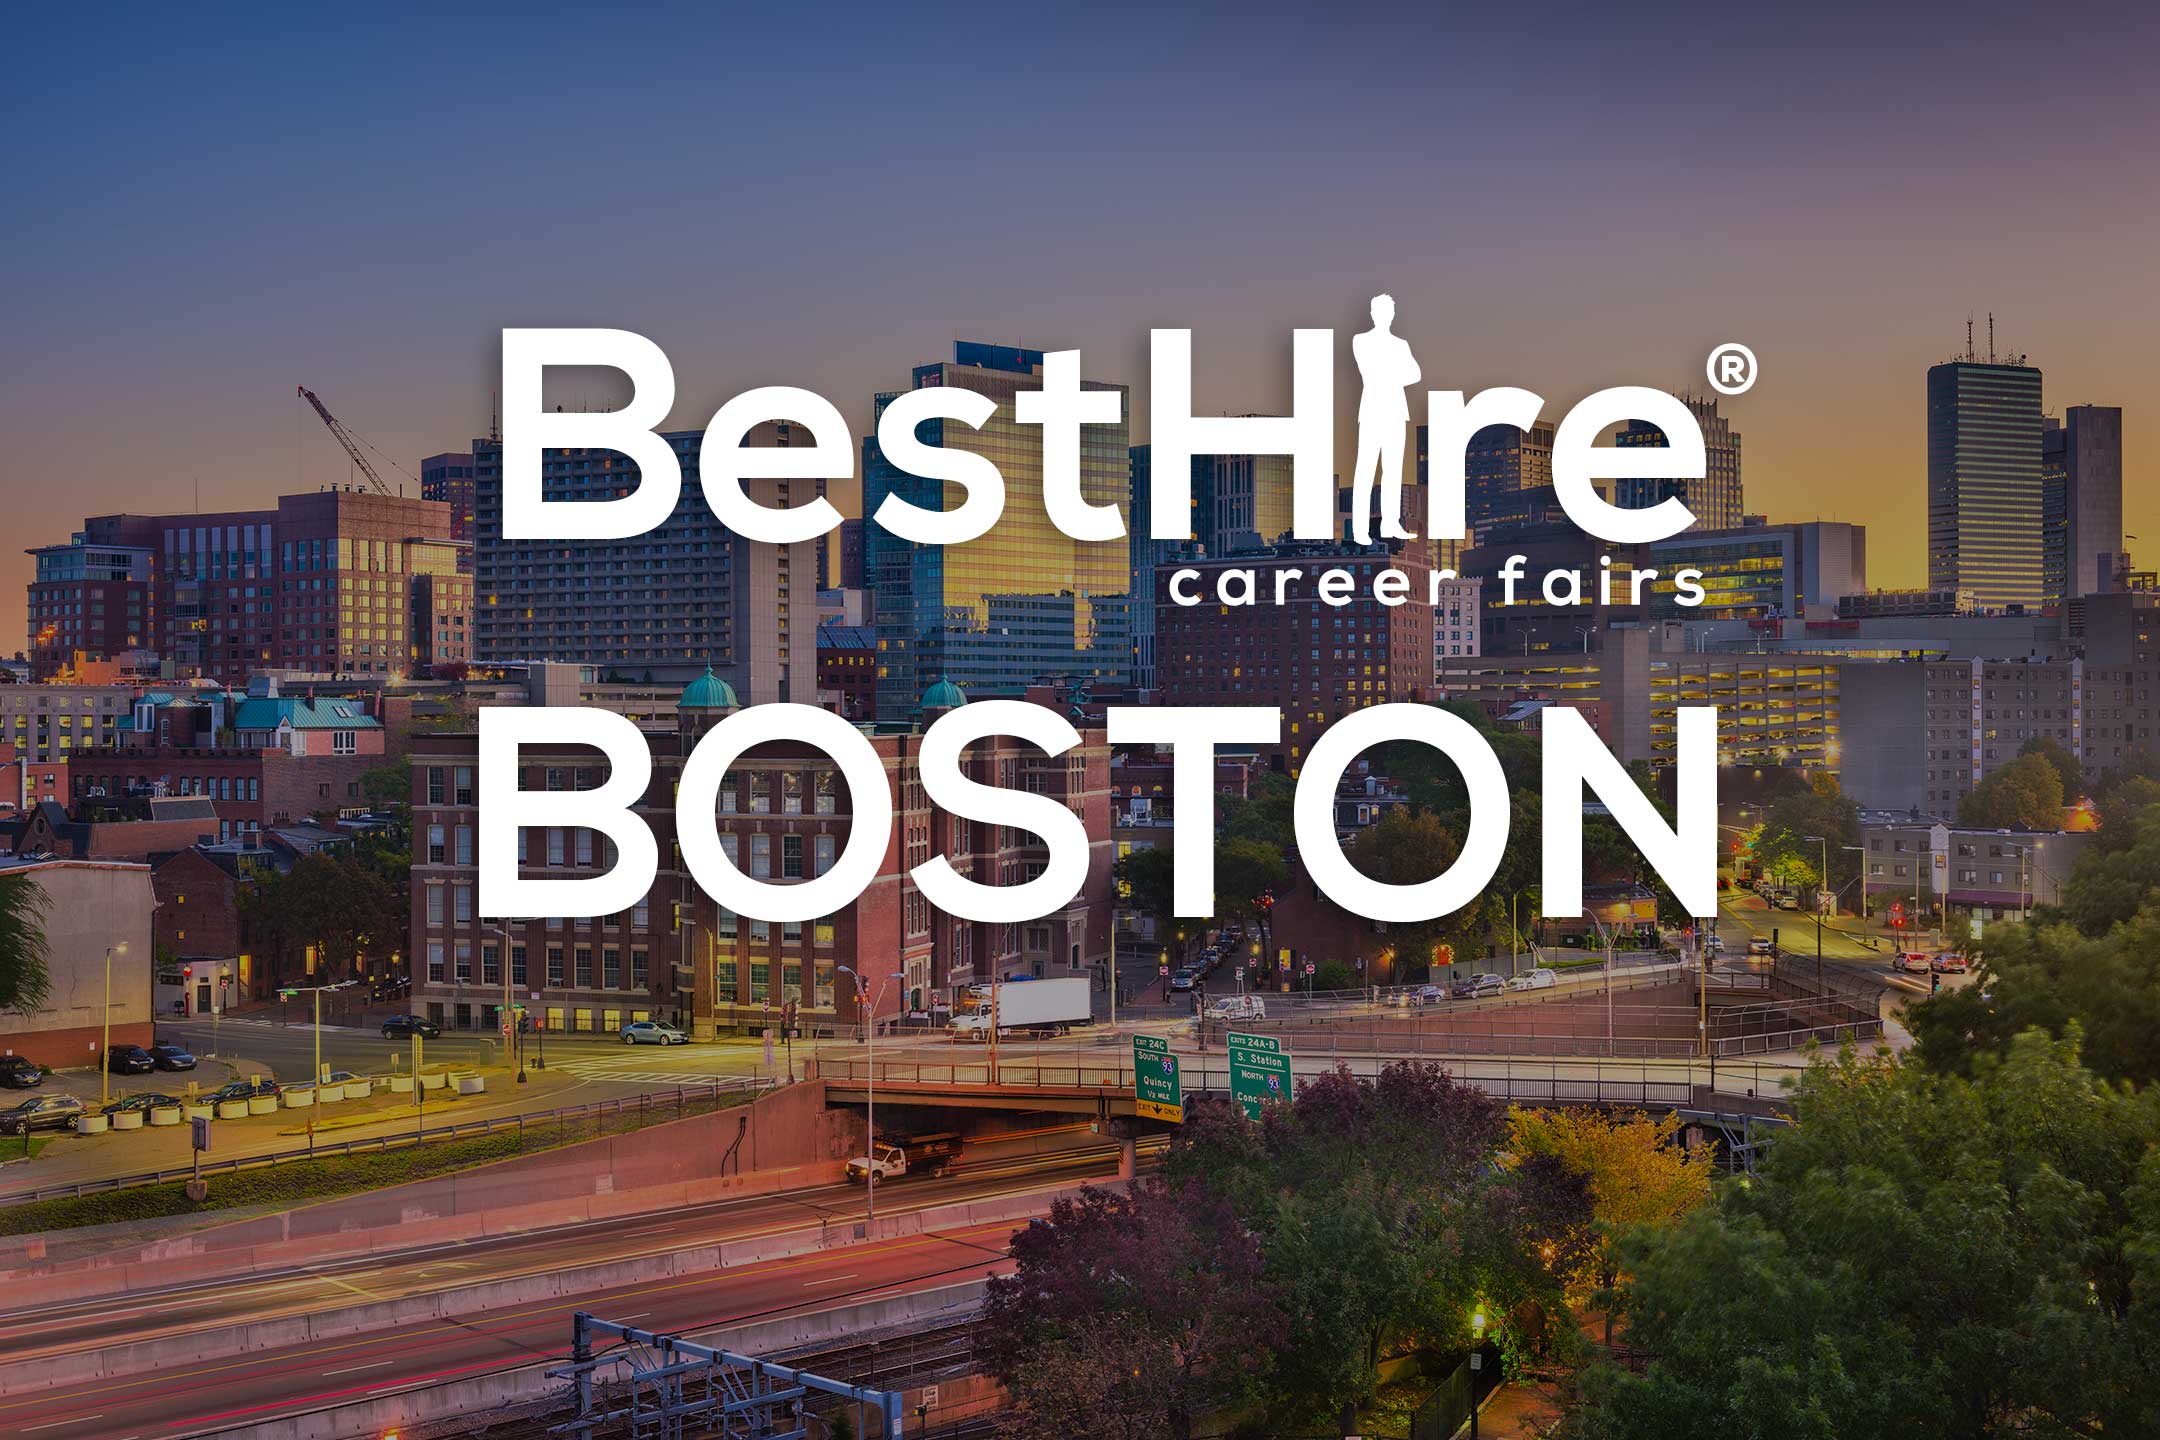 Boston Job Fairs - Best Hire Career Fairs